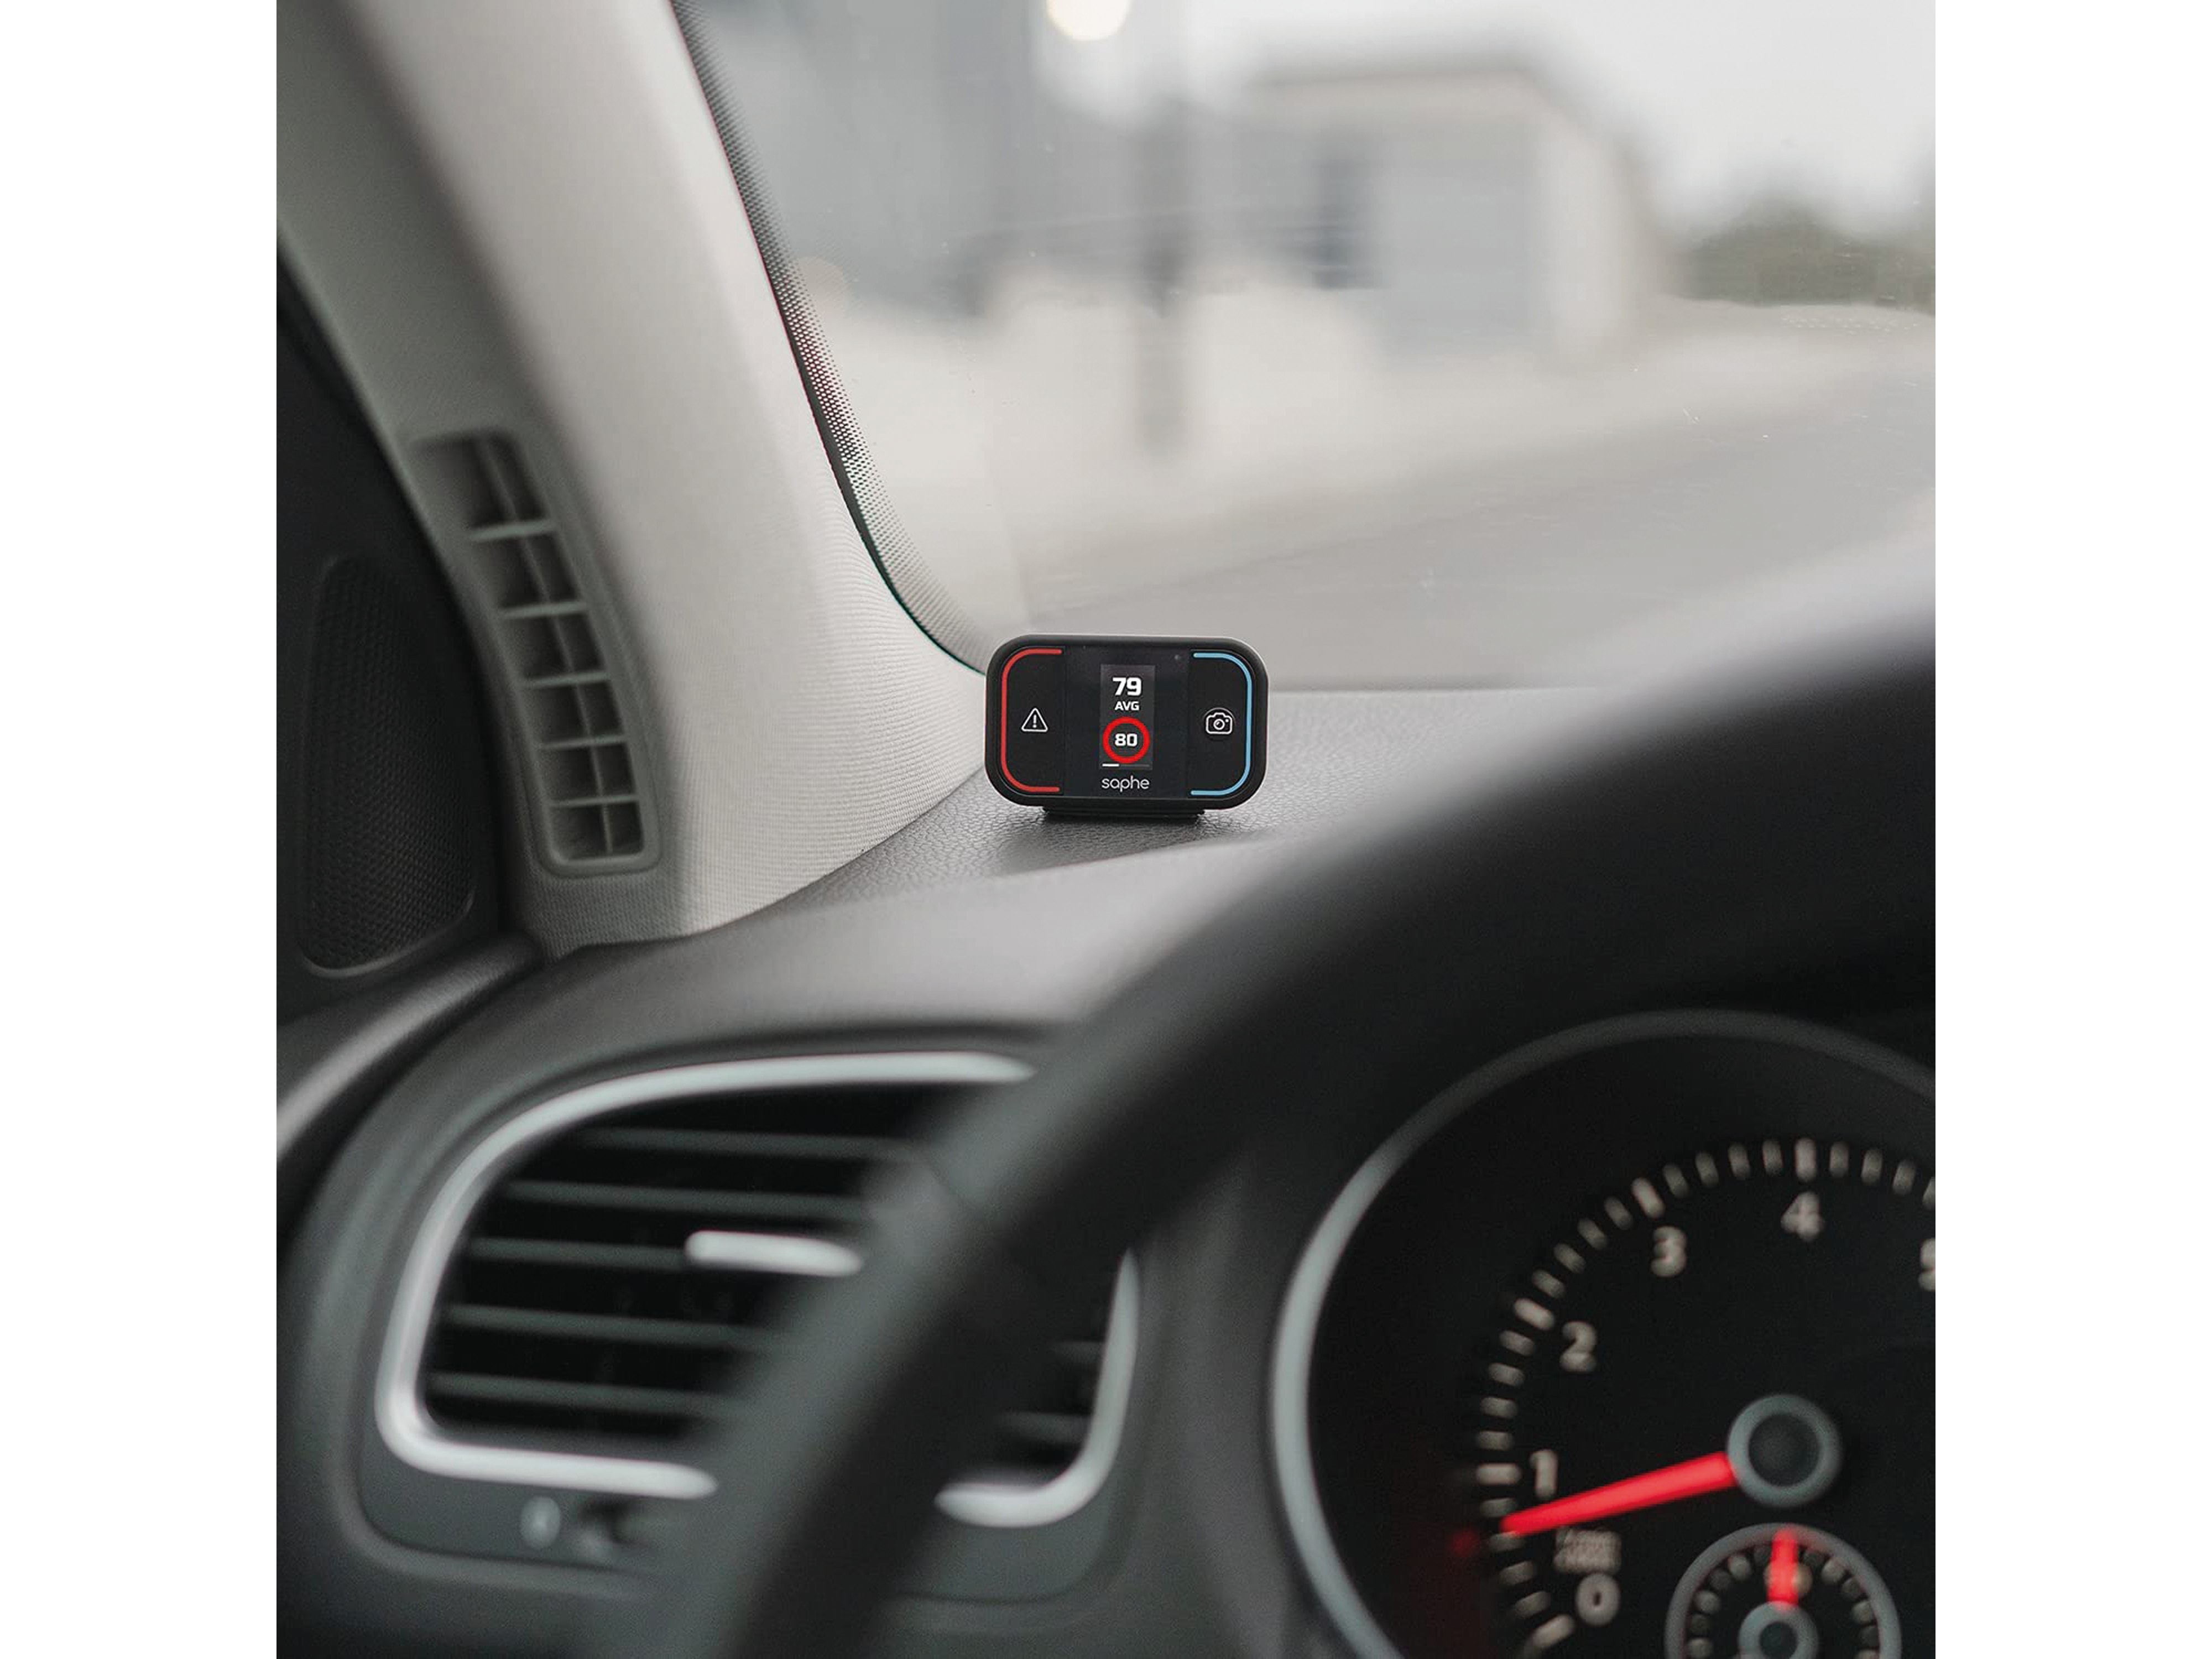 SAPHE Drive Mini Radar und Gefahrenwarner, Auto-Version